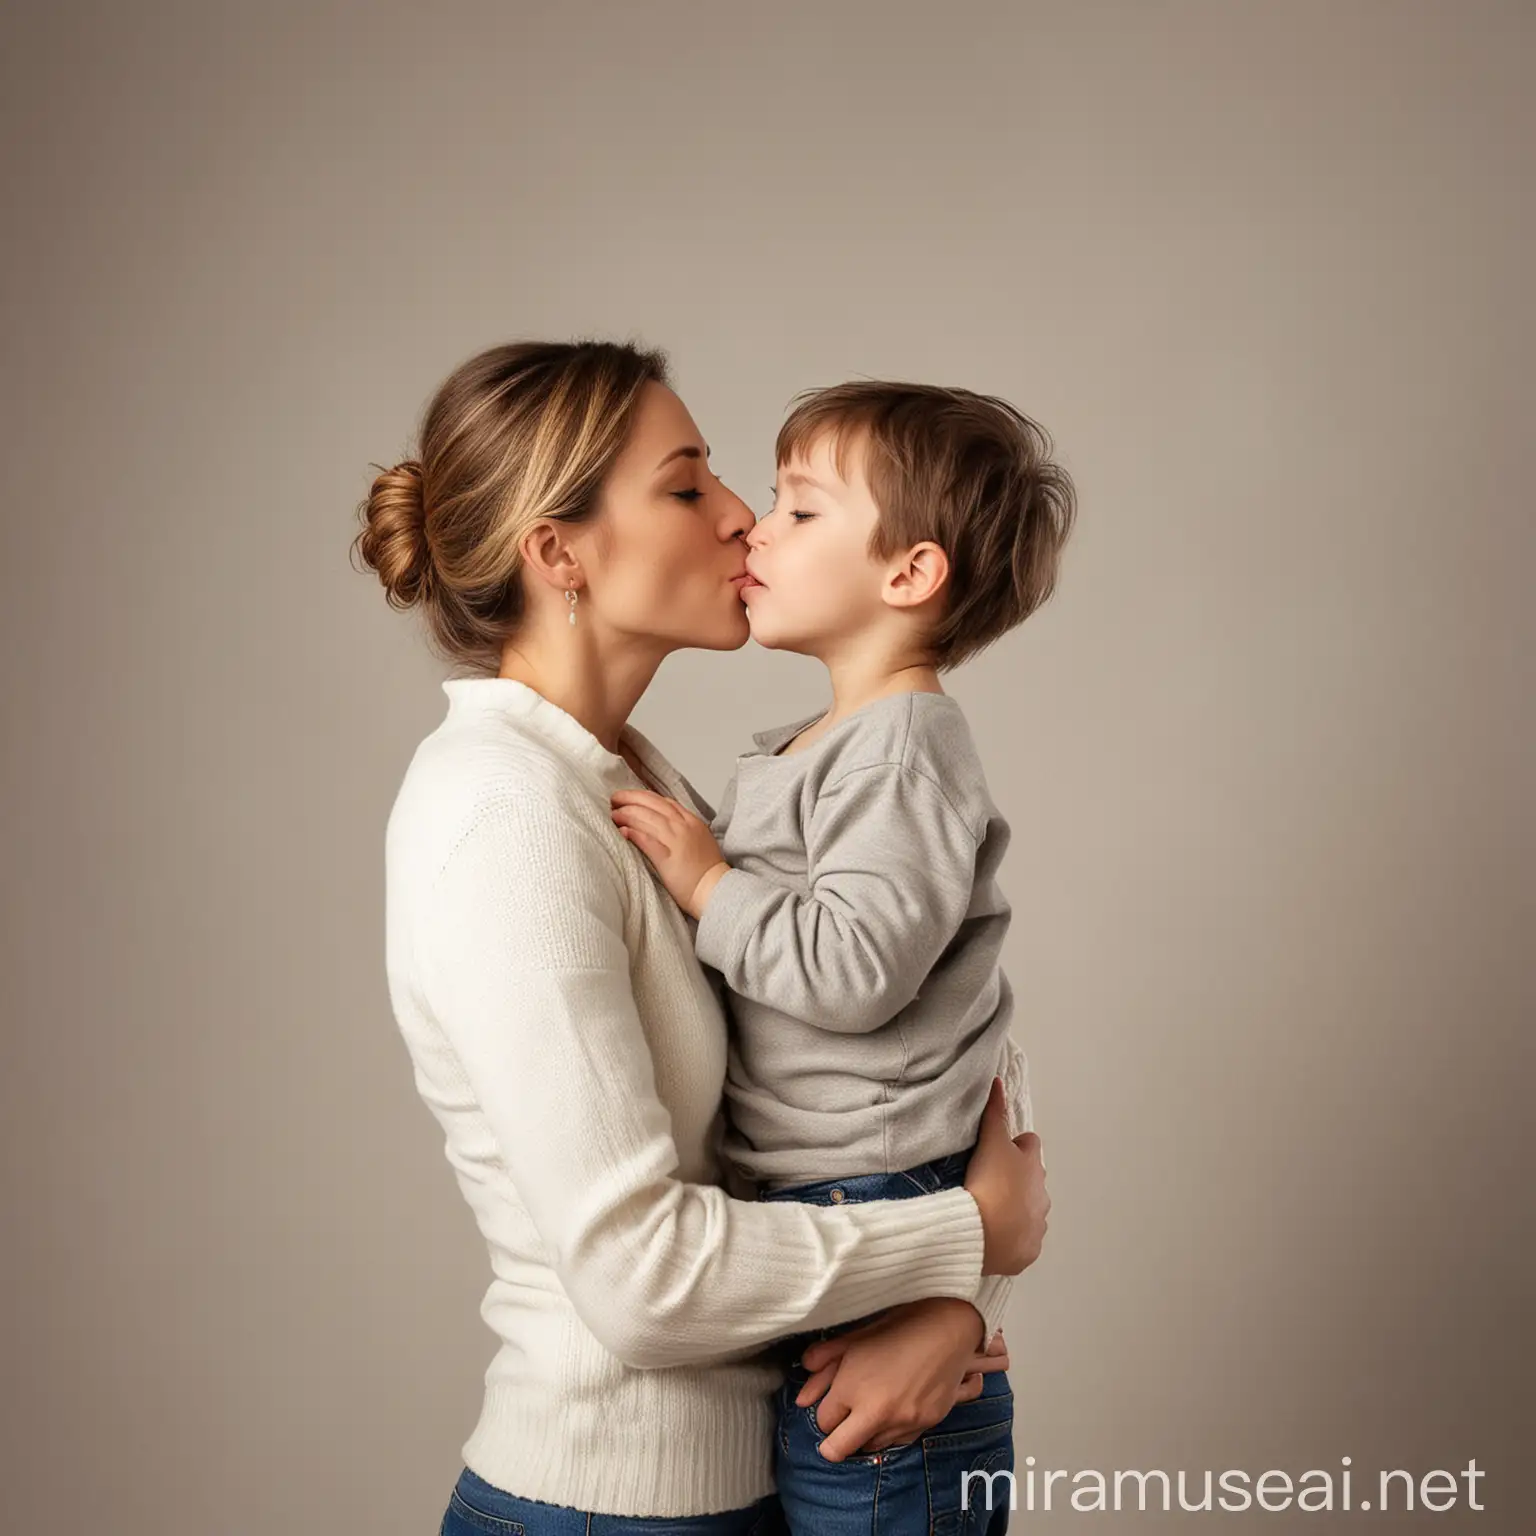 madre, hijo, abrazo, beso, dulzura, cariño, amor, no hay fondo en la imagen, espacio vacío en ambos lados

 
